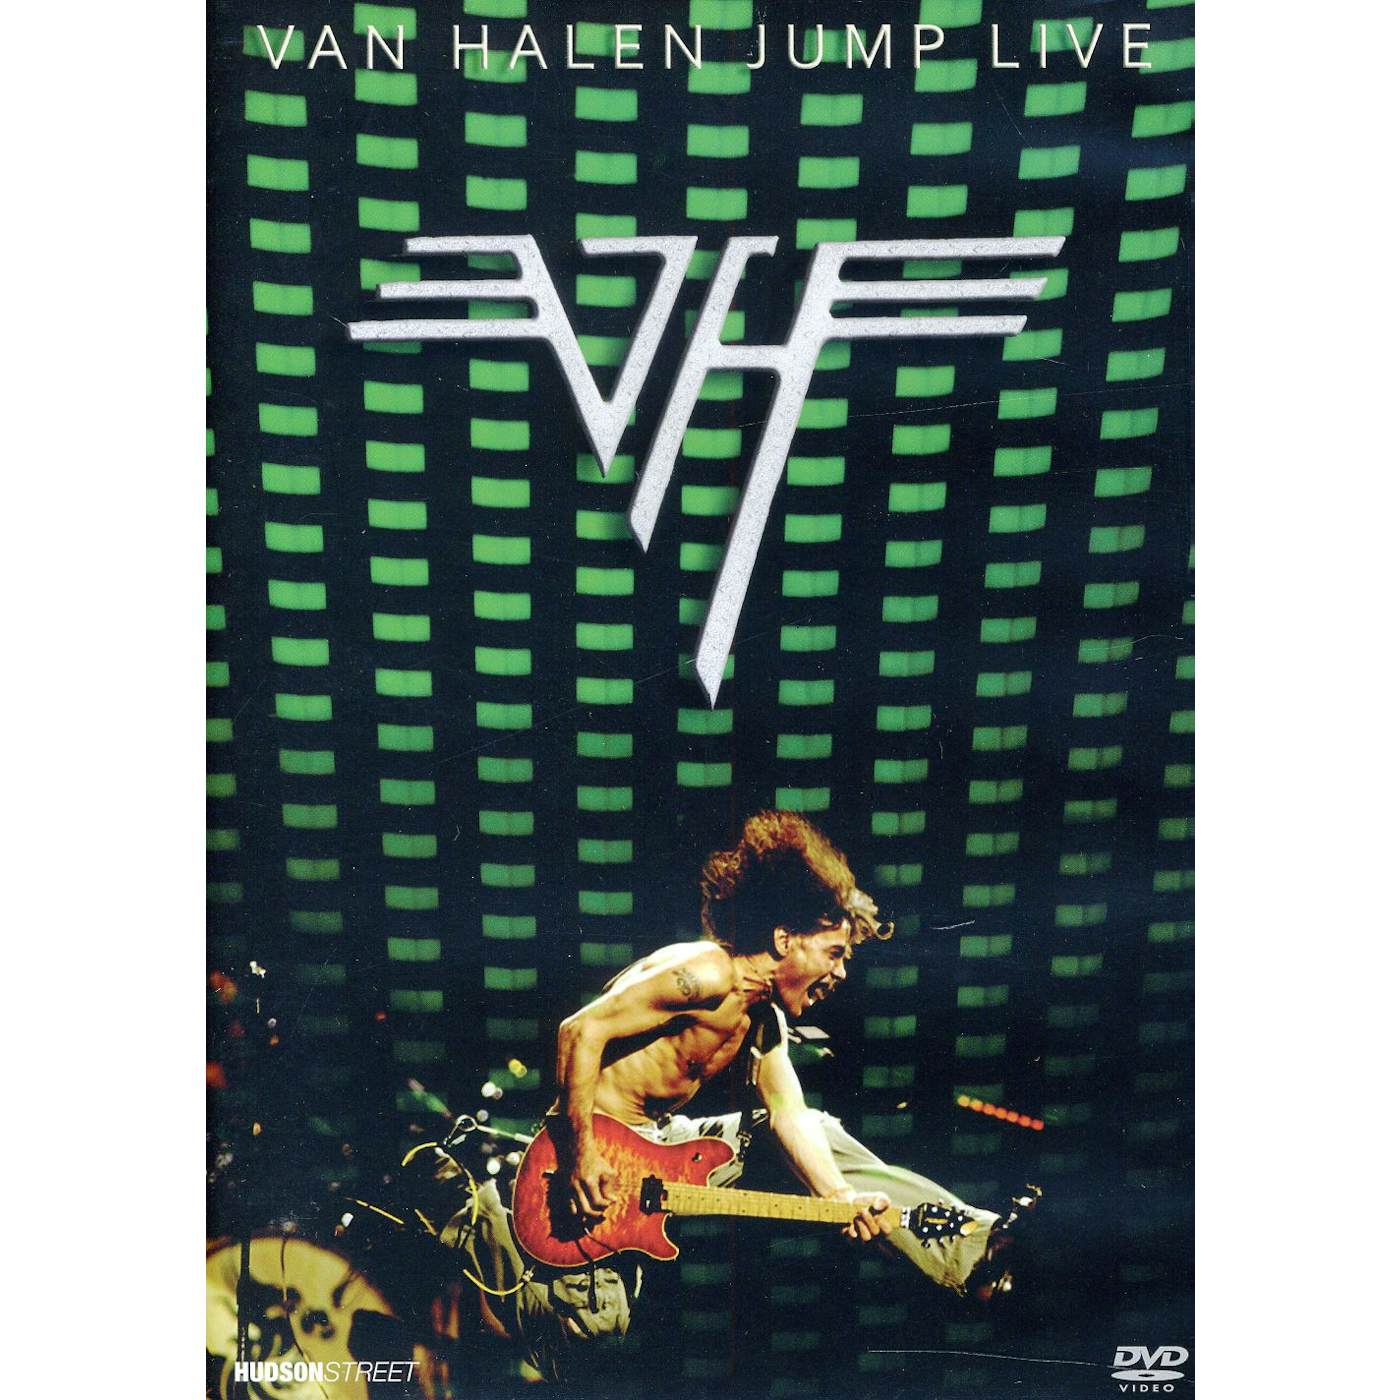 Van Halen JUMP: LIVE DVD